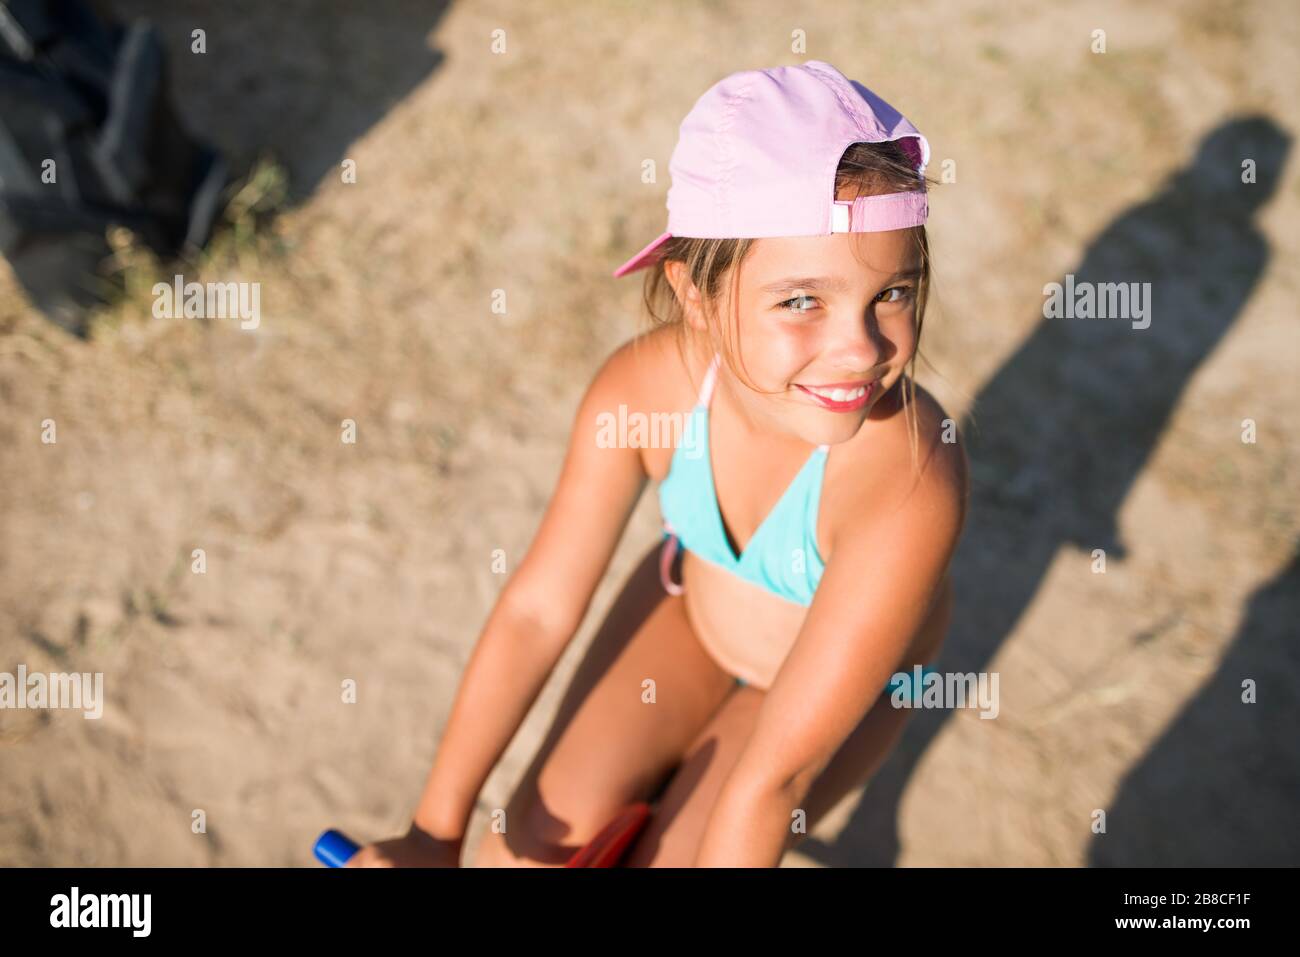 Une petite adorable fille joue sur un cheval jouet sur une aire de jeux près de la mer lors d'une chaude journée d'été ensoleillée pendant les vacances. Le concept de jeux pour enfants sur le Banque D'Images